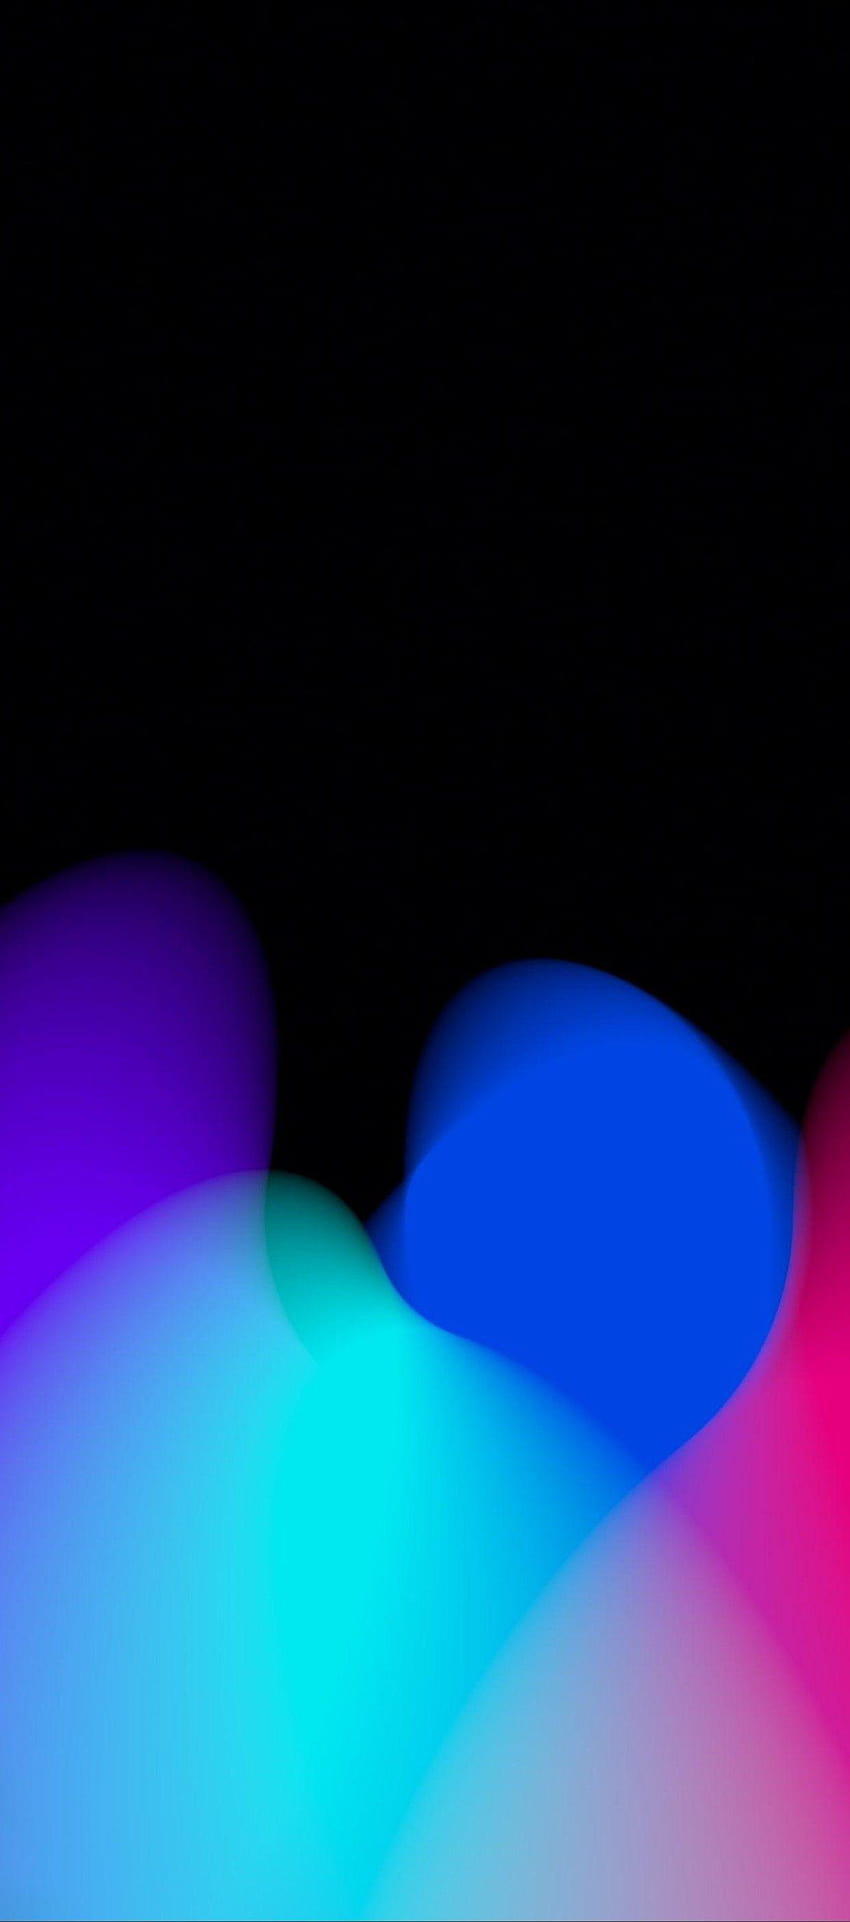 iOS 11, iPhone X, pencahayaan hitam, merah, ungu, biru, bersih, sederhana, abstrak, biru dan merah wallpaper ponsel HD